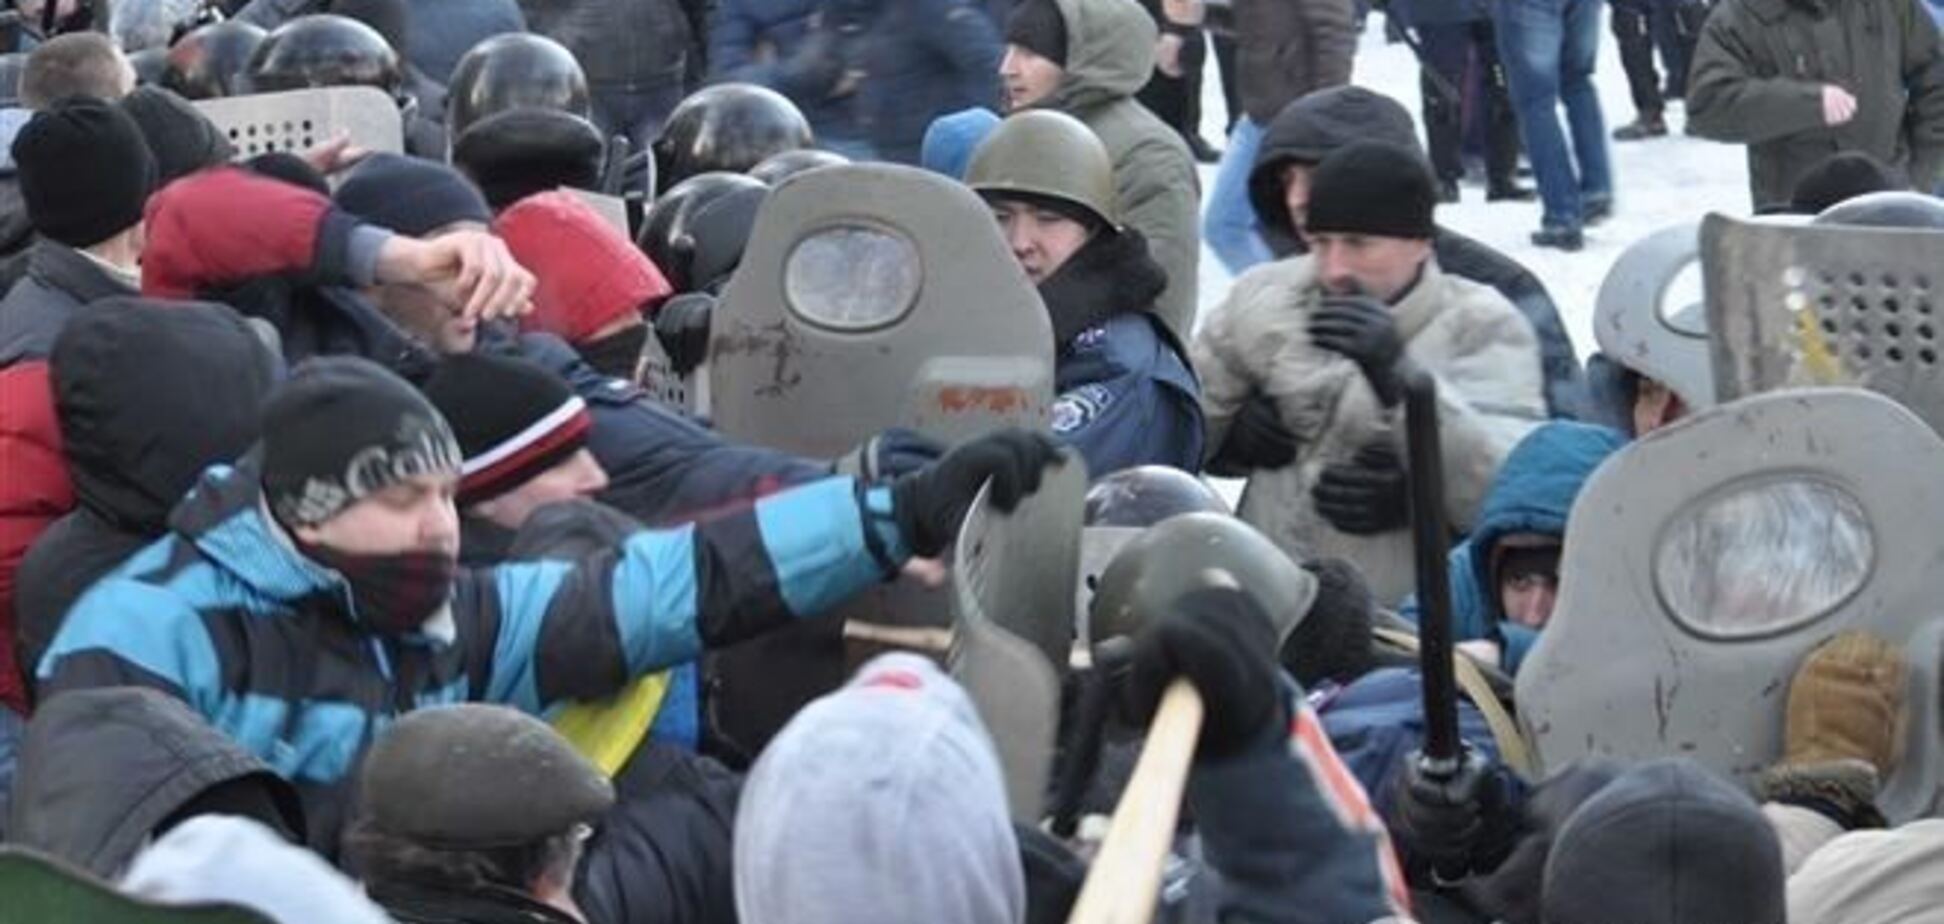 Після розгону активістів у Дніпропетровську постраждали шестеро журналістів